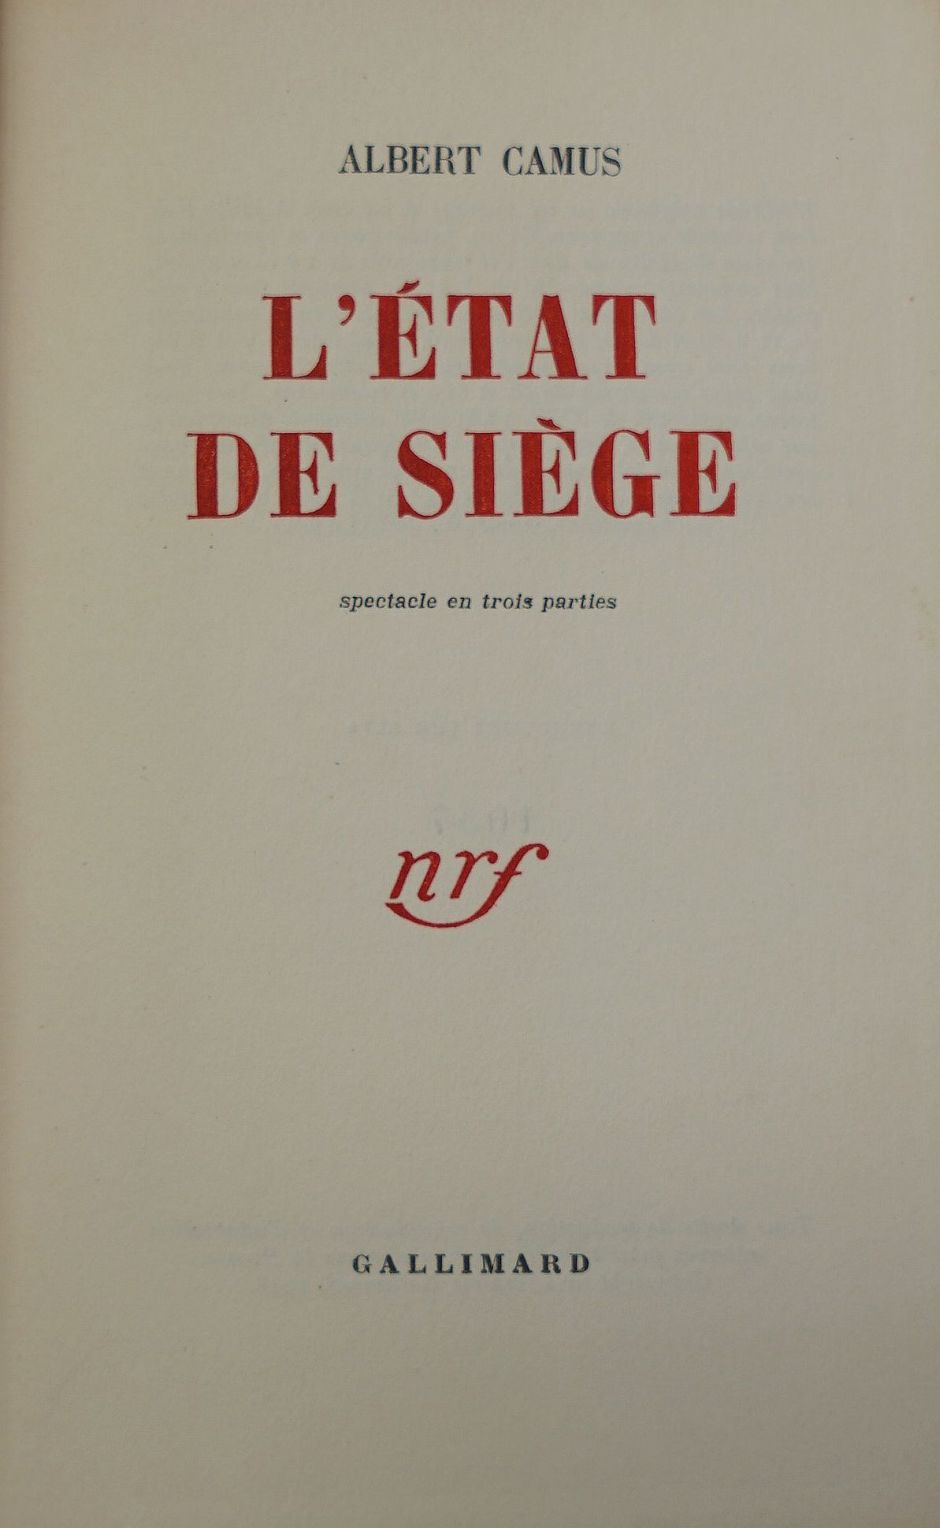 Lot 3050, Auction  115, Camus, Albert, 3 Werke in Erstausgabe, darunter eines mit eigenhändiger Widmung